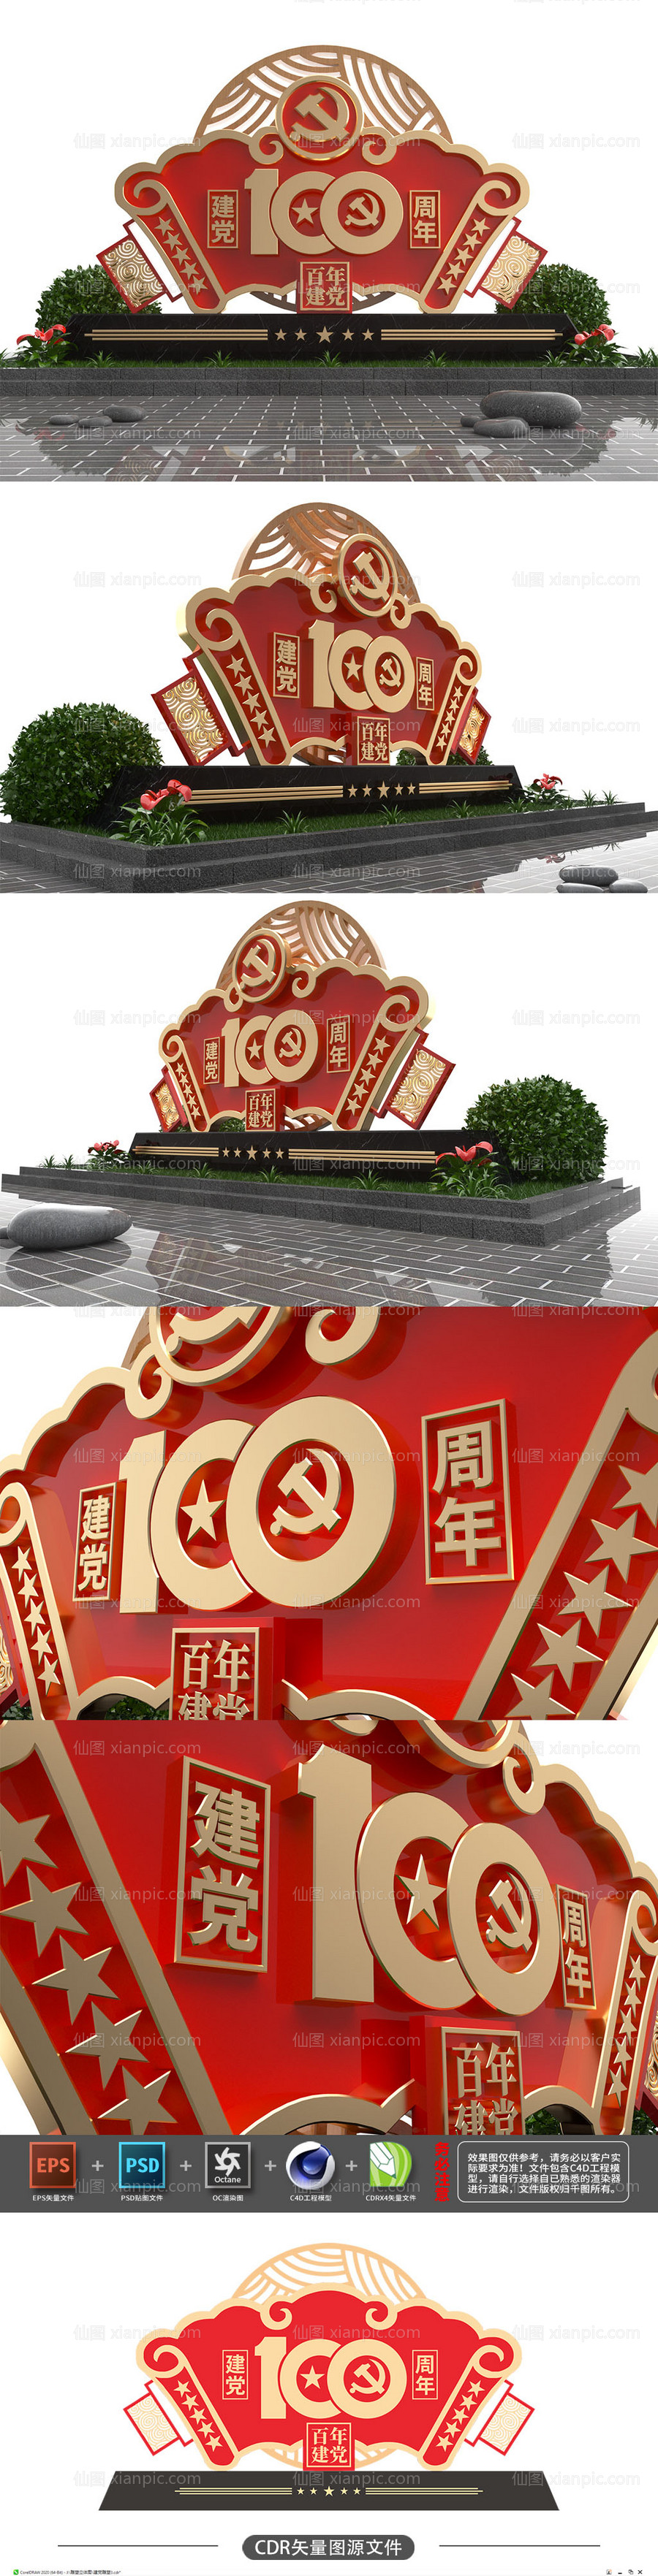 素材乐-党建100周年美陈雕塑